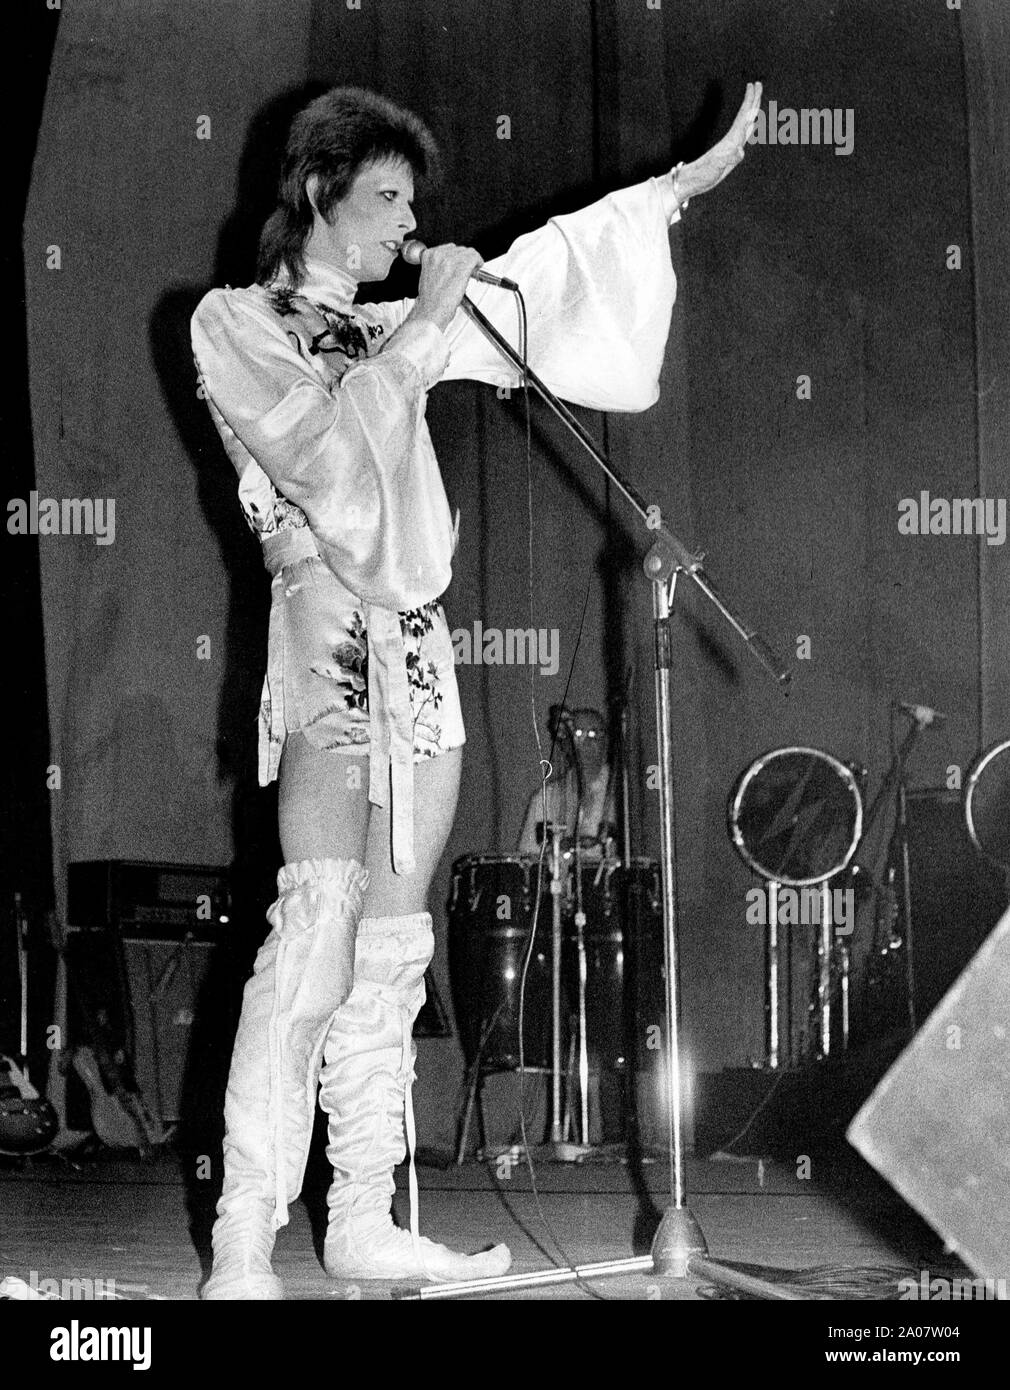 4 luglio 1973 - Londra, Inghilterra, Regno Unito - pop star David Bowie alza la mano verso la folla durante l'esecuzione dal vivo sul palco al suo ultimo concerto presso il Teatro Odeon. Egli ha proclamato a ventole alla fine, che "questo è il concerto che non dimenticherò mai, in quanto è l'ultimo che ho mai fare.' (credito Immagine: © Keystone Press Agency/Keystone USA via ZUMAPRESS.com) Foto Stock